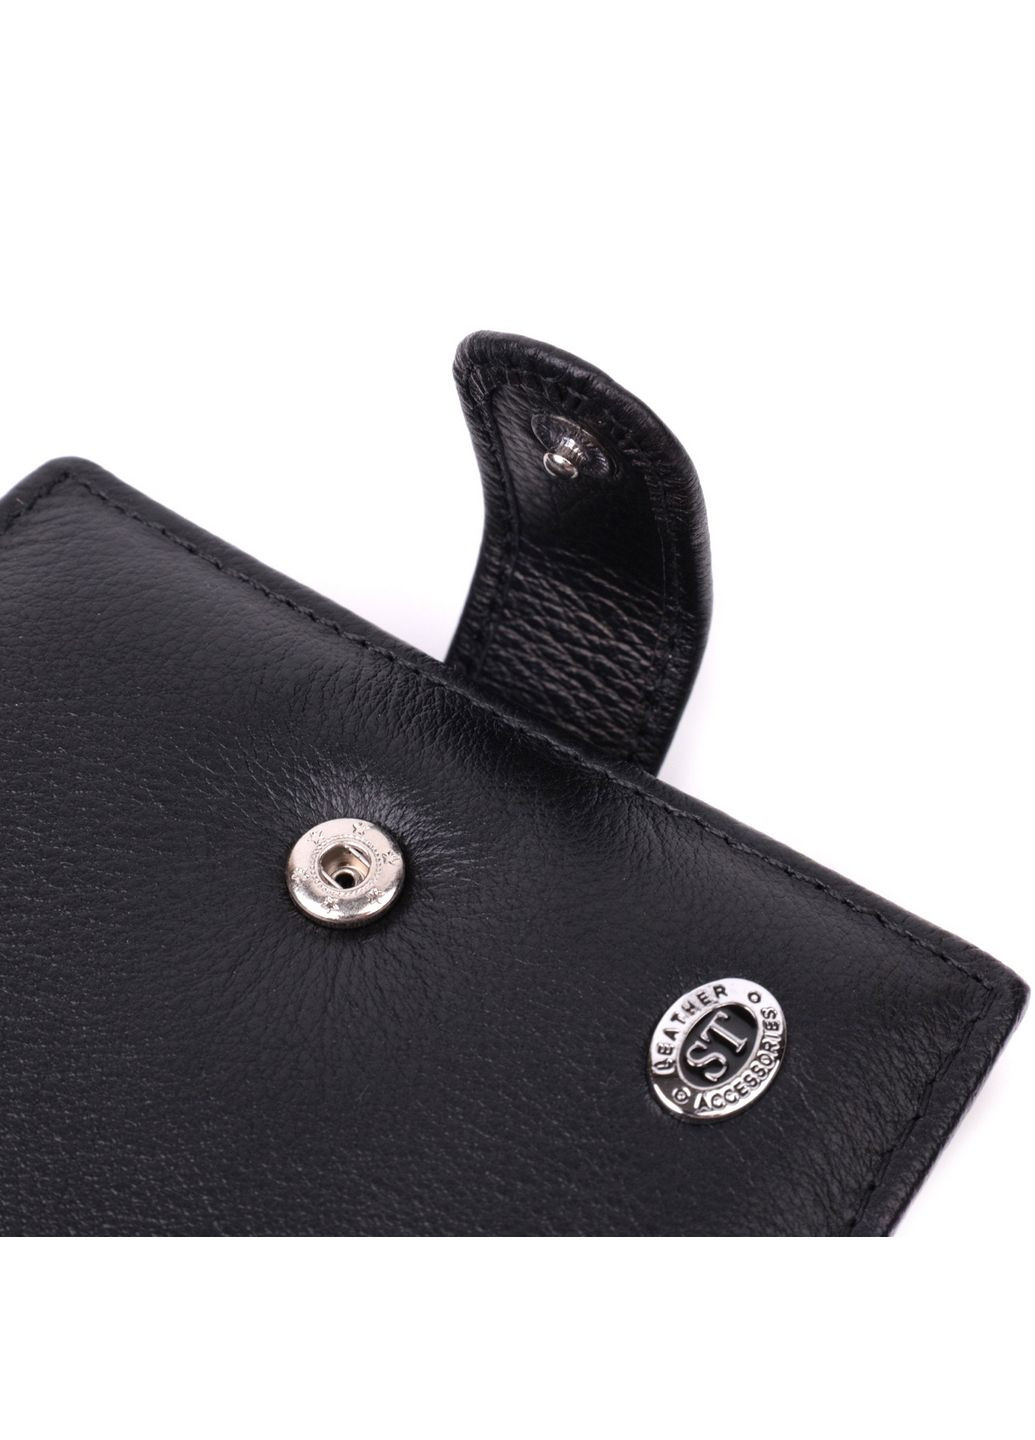 Кожаный мужской бумажник st leather (288184822)